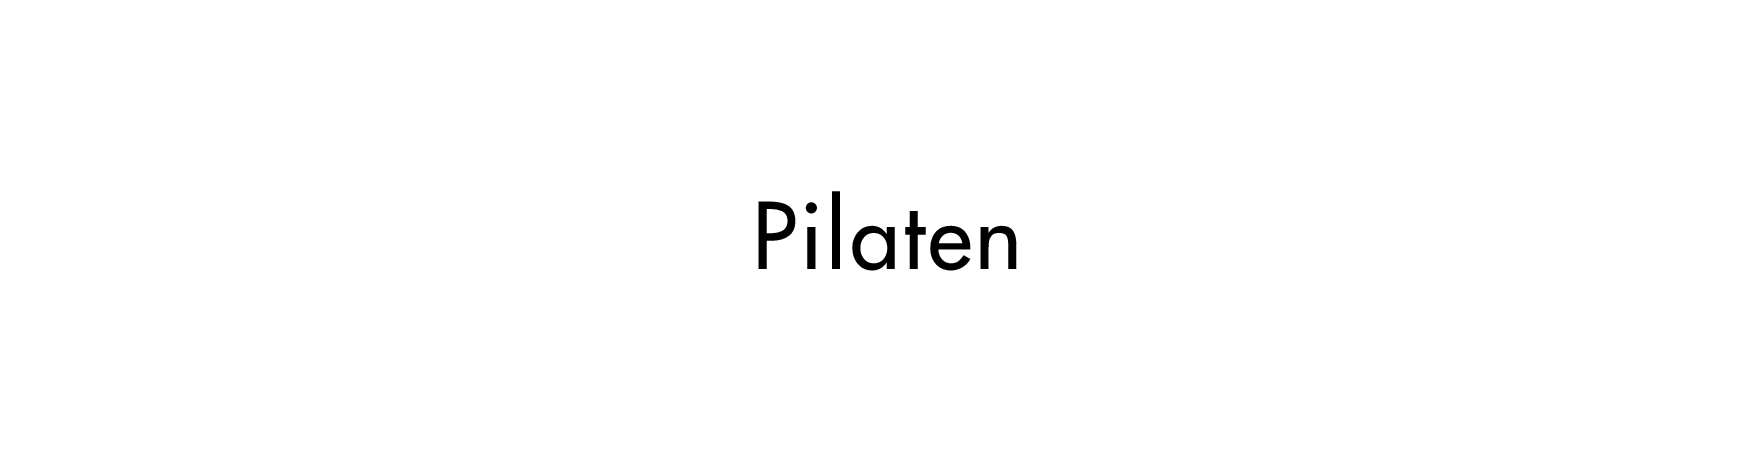 Pilaten